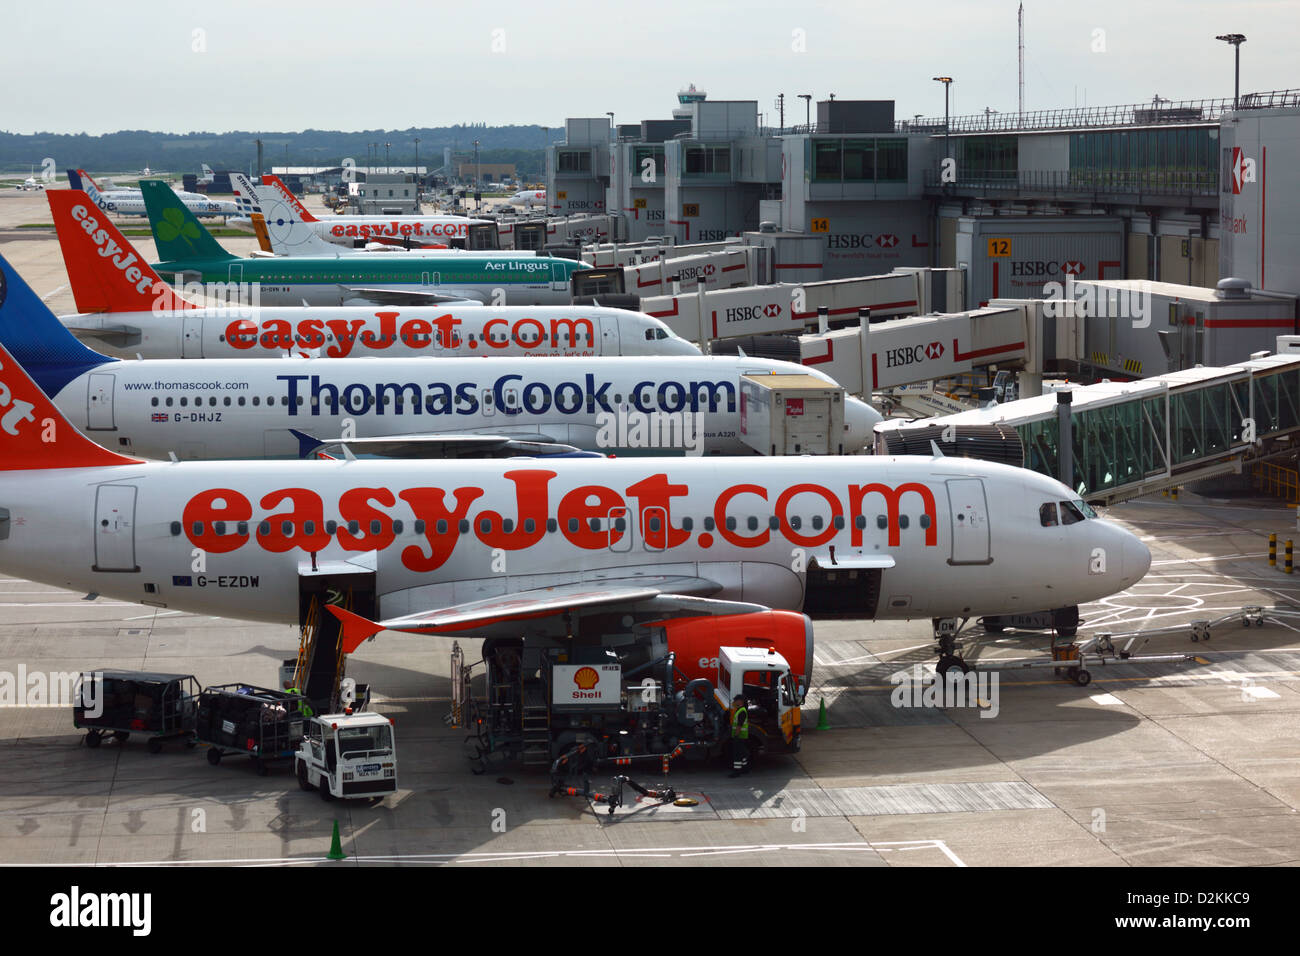 Gli aerei easyJet, Thomas Cook e Air Lingus parcheggiarono sulla rampa del South Terminal, LGW London Gatwick Airport, vicino a Crawley, West Sussex, Inghilterra Foto Stock